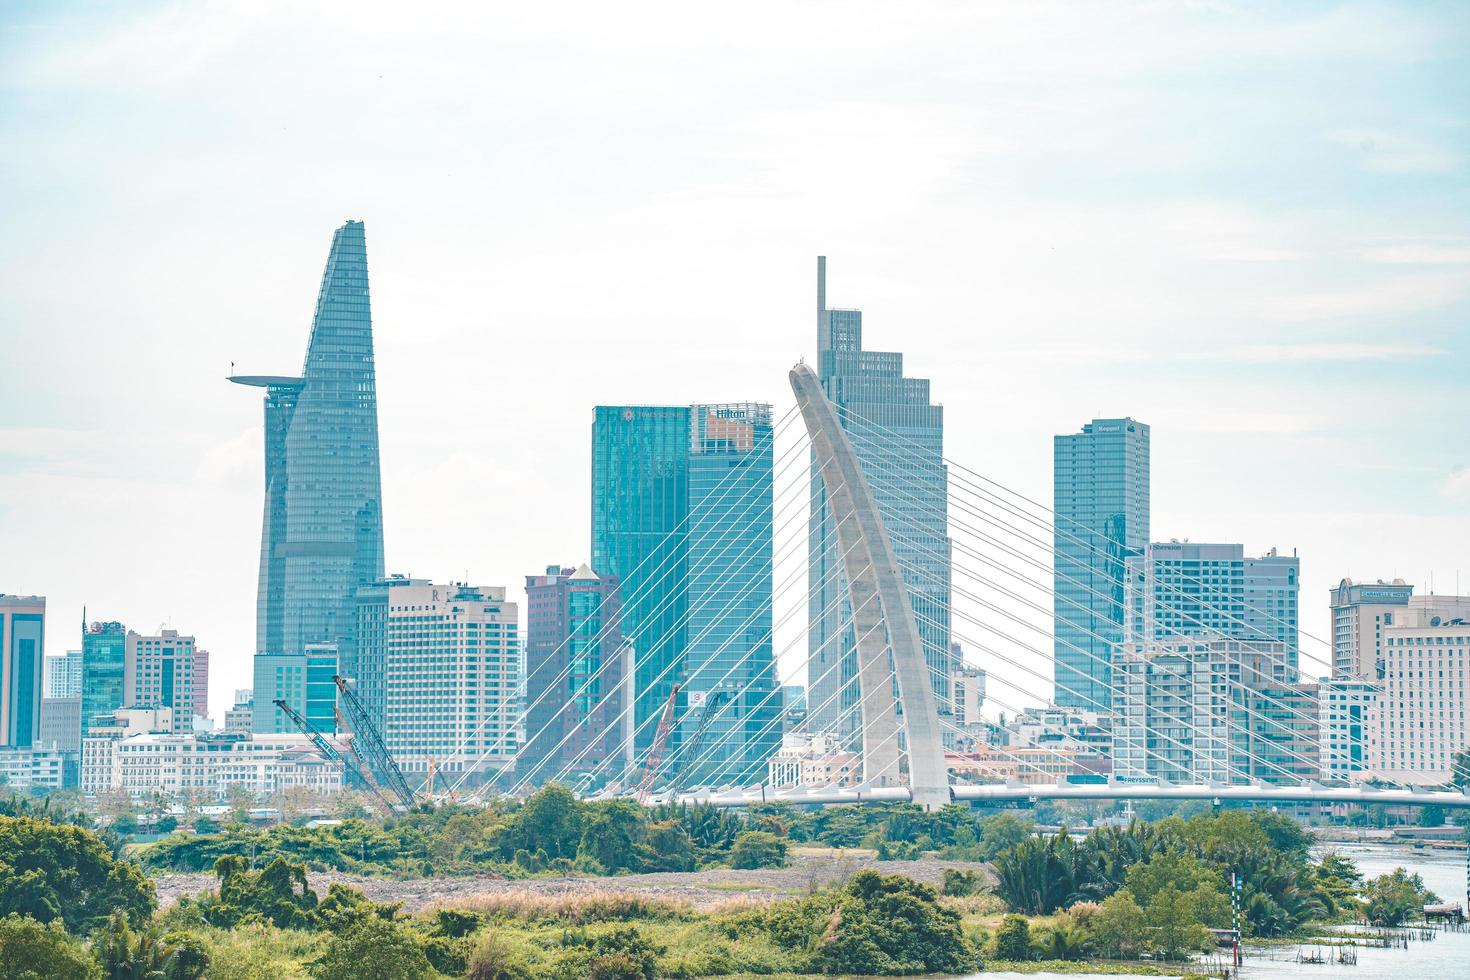 ho chi minh ville, vietnam - 12 février 2022 tour financière bitexco, gratte-ciel vu d'en bas vers un ciel. développement urbain avec une architecture moderne photo